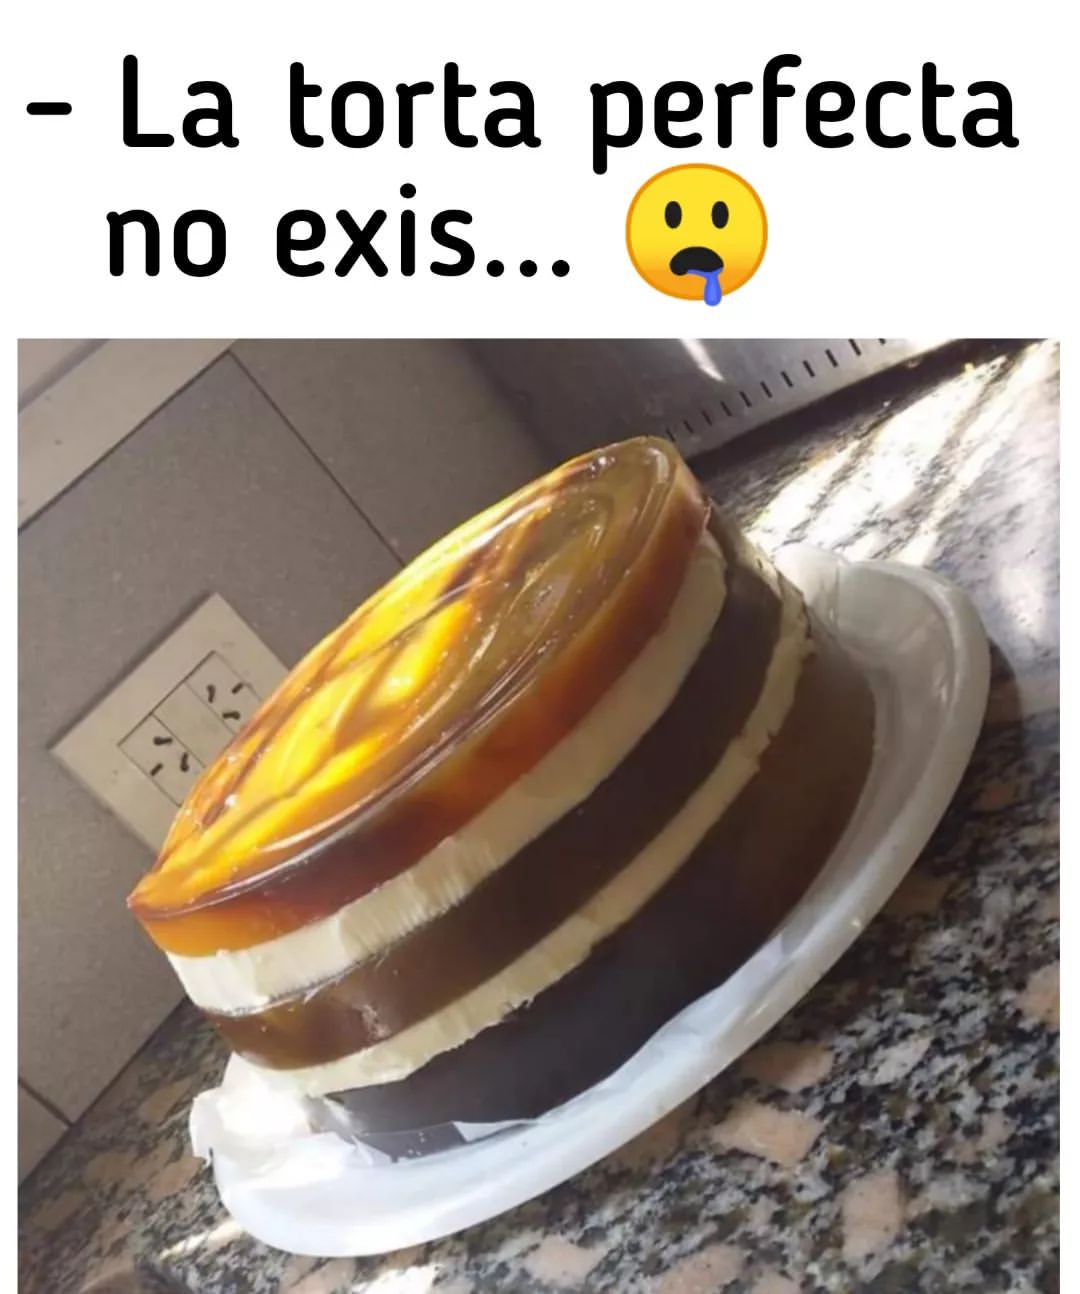 La torta perfecta no exis...